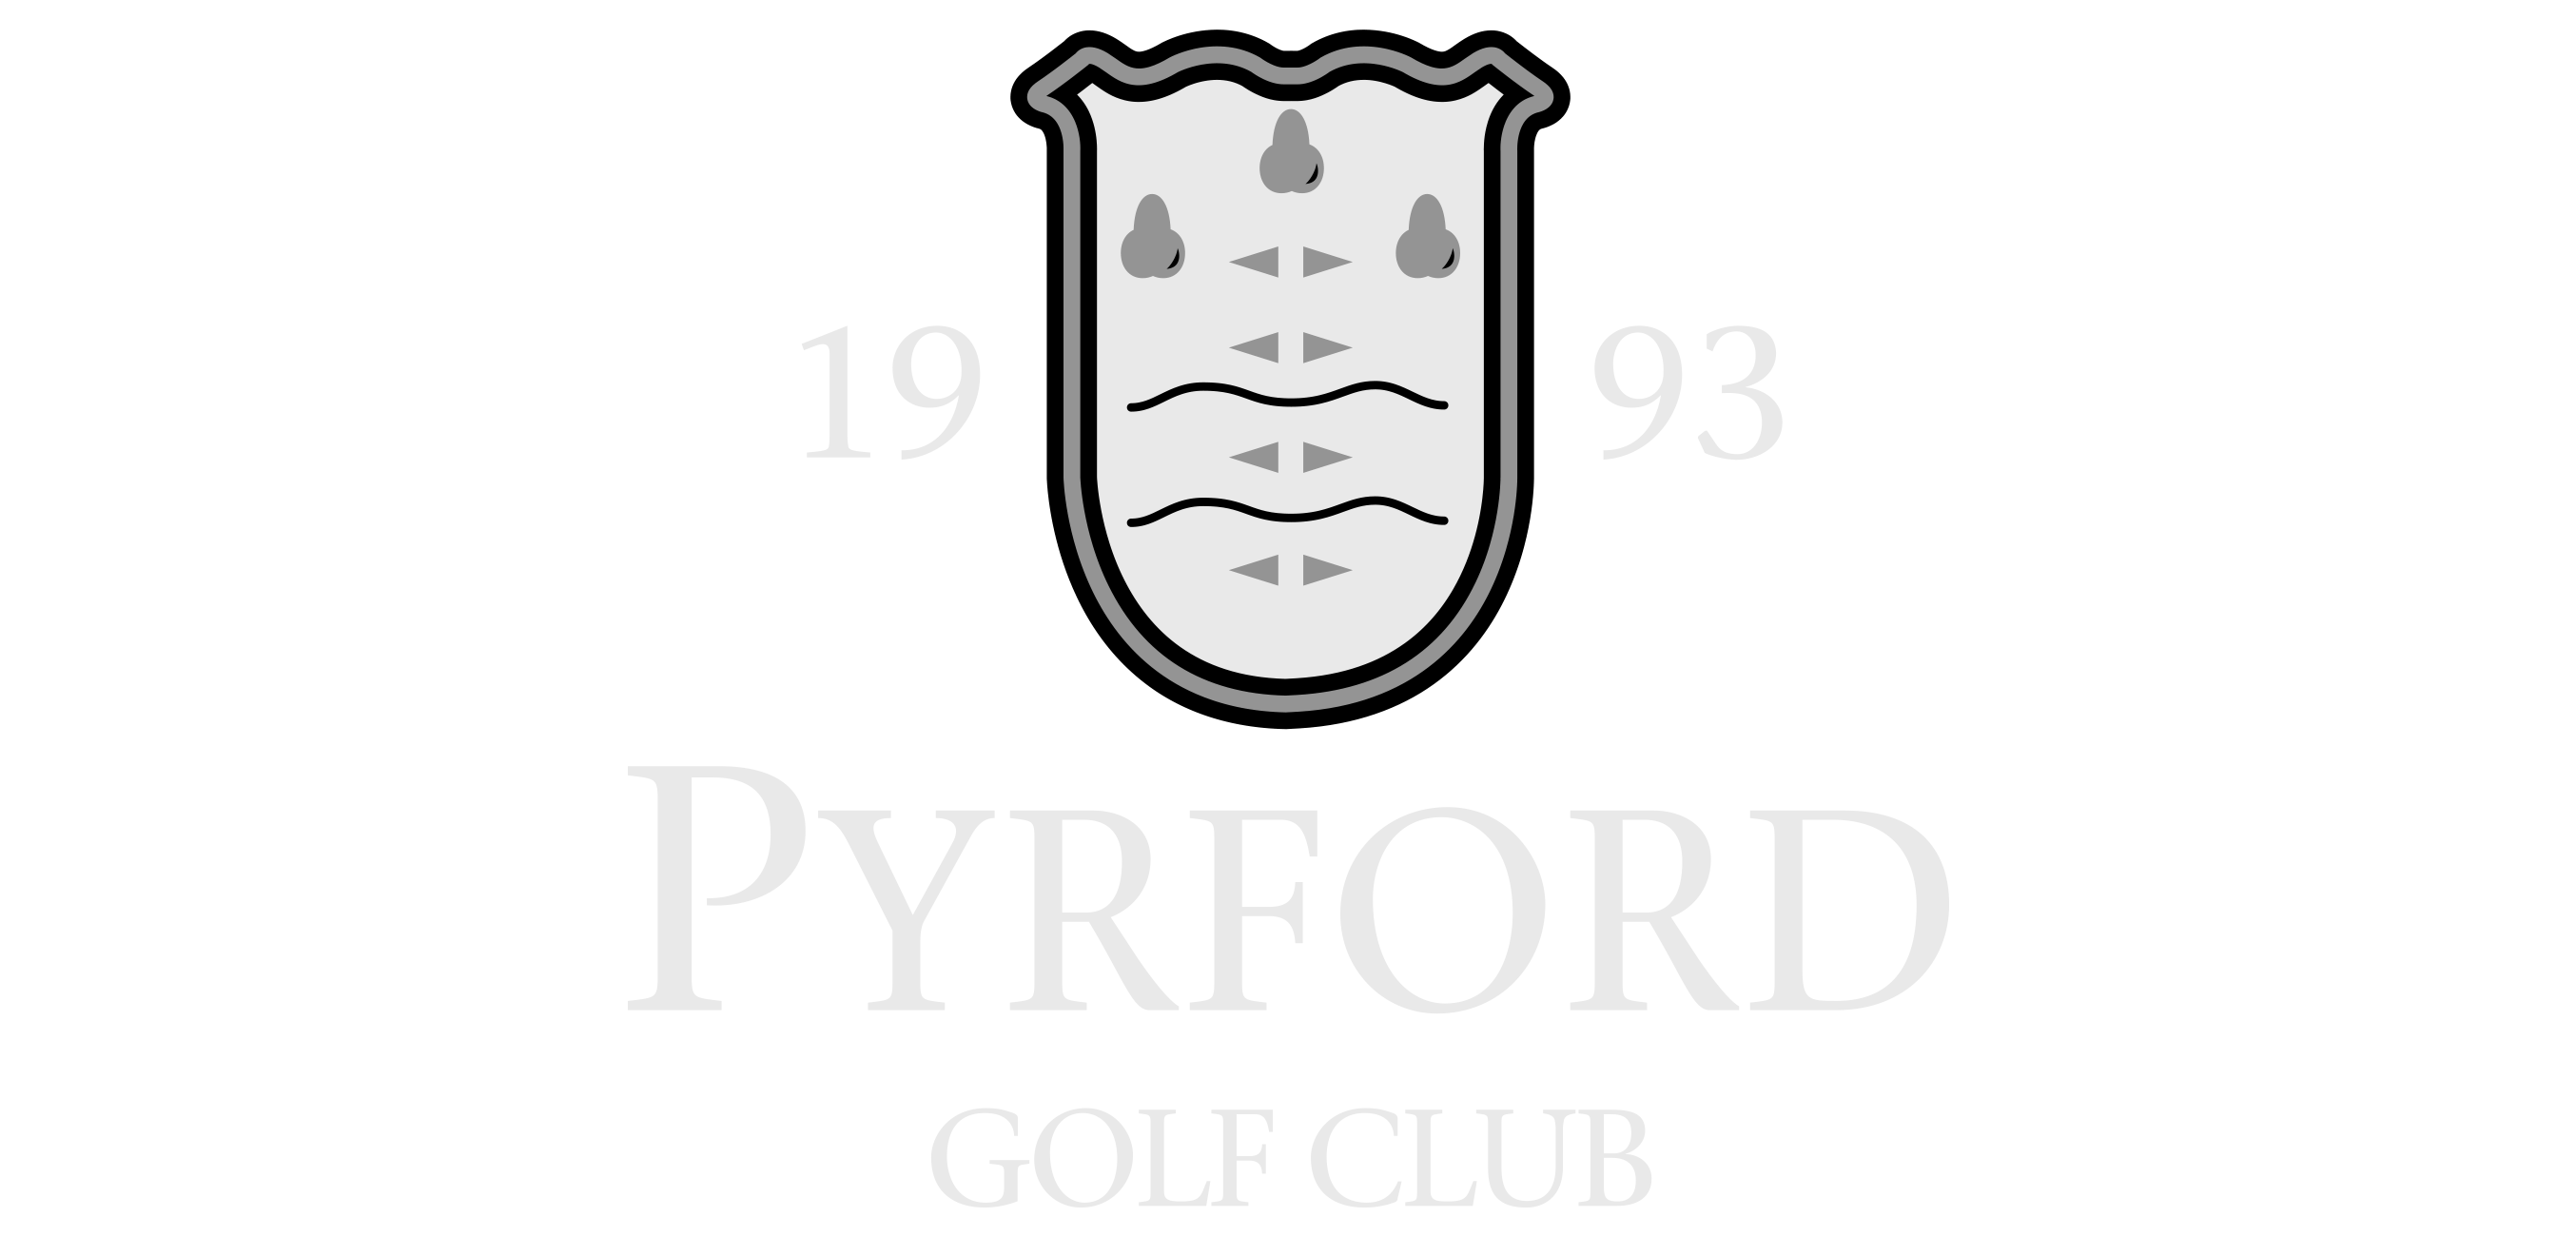 Golf Club Logo - Pyrford Golf Club | Golf Membership | Venue Hire Woking, Surrey